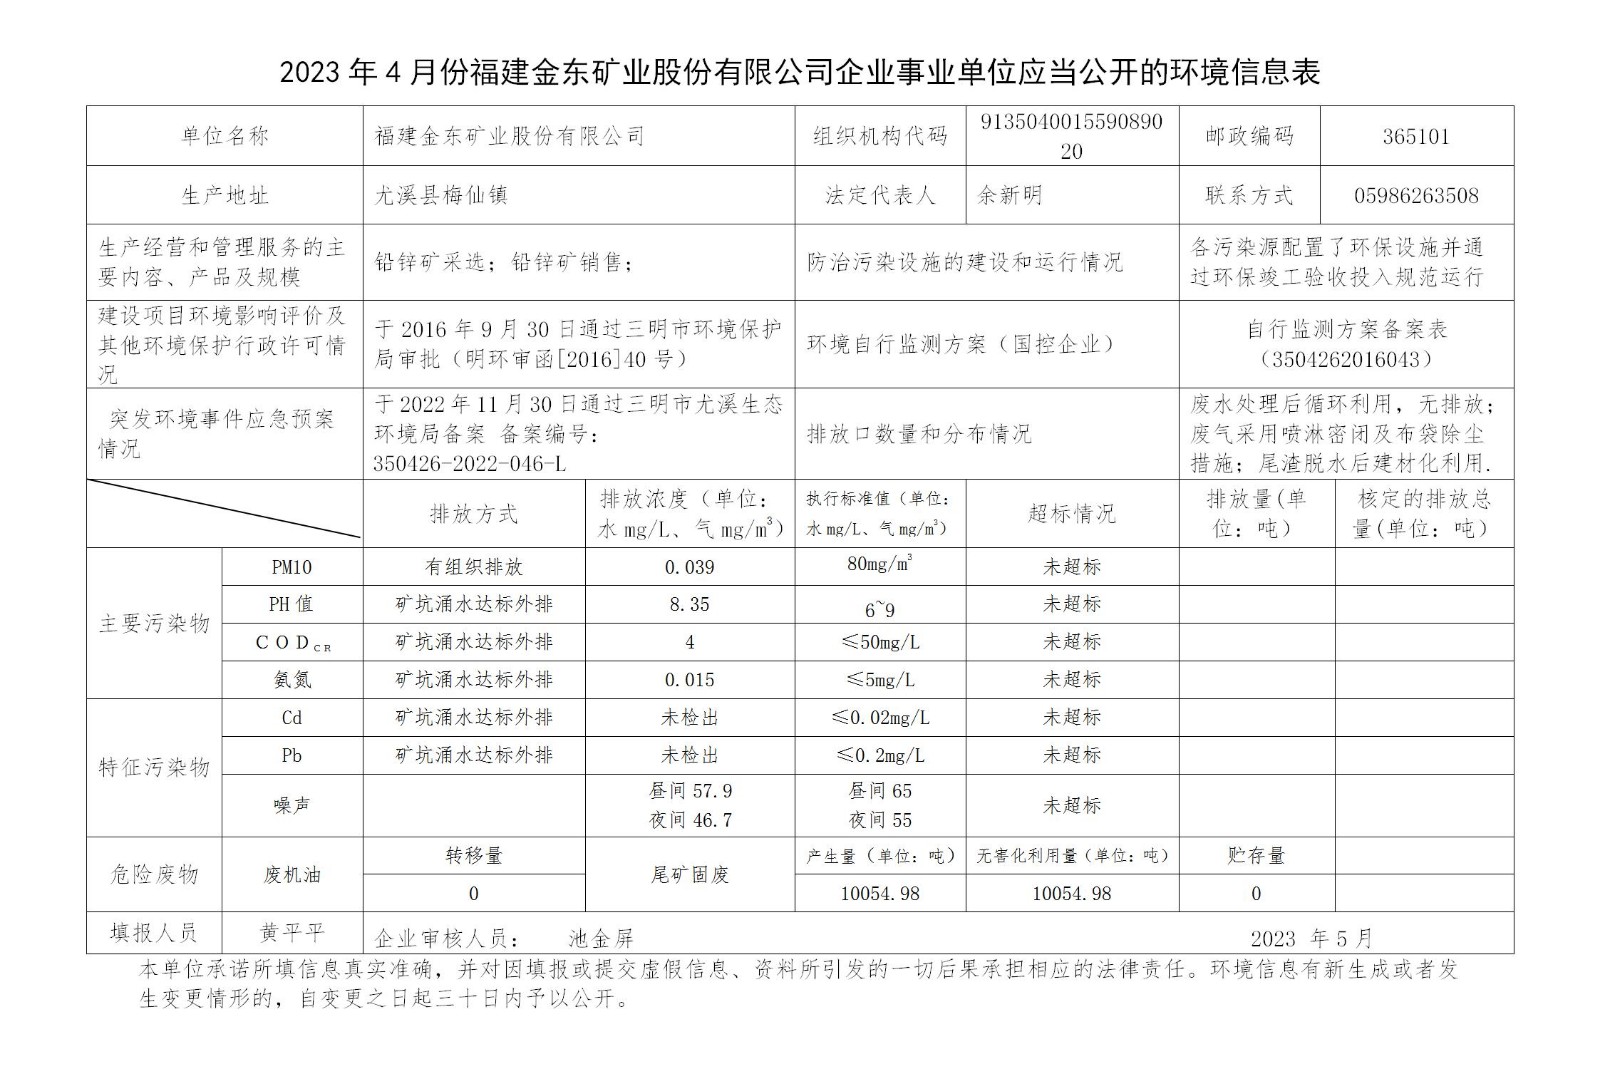 2023年4月份开元体育(中国)管理有限公司官网企业事业单位应当公开的环境信息表_01.jpg